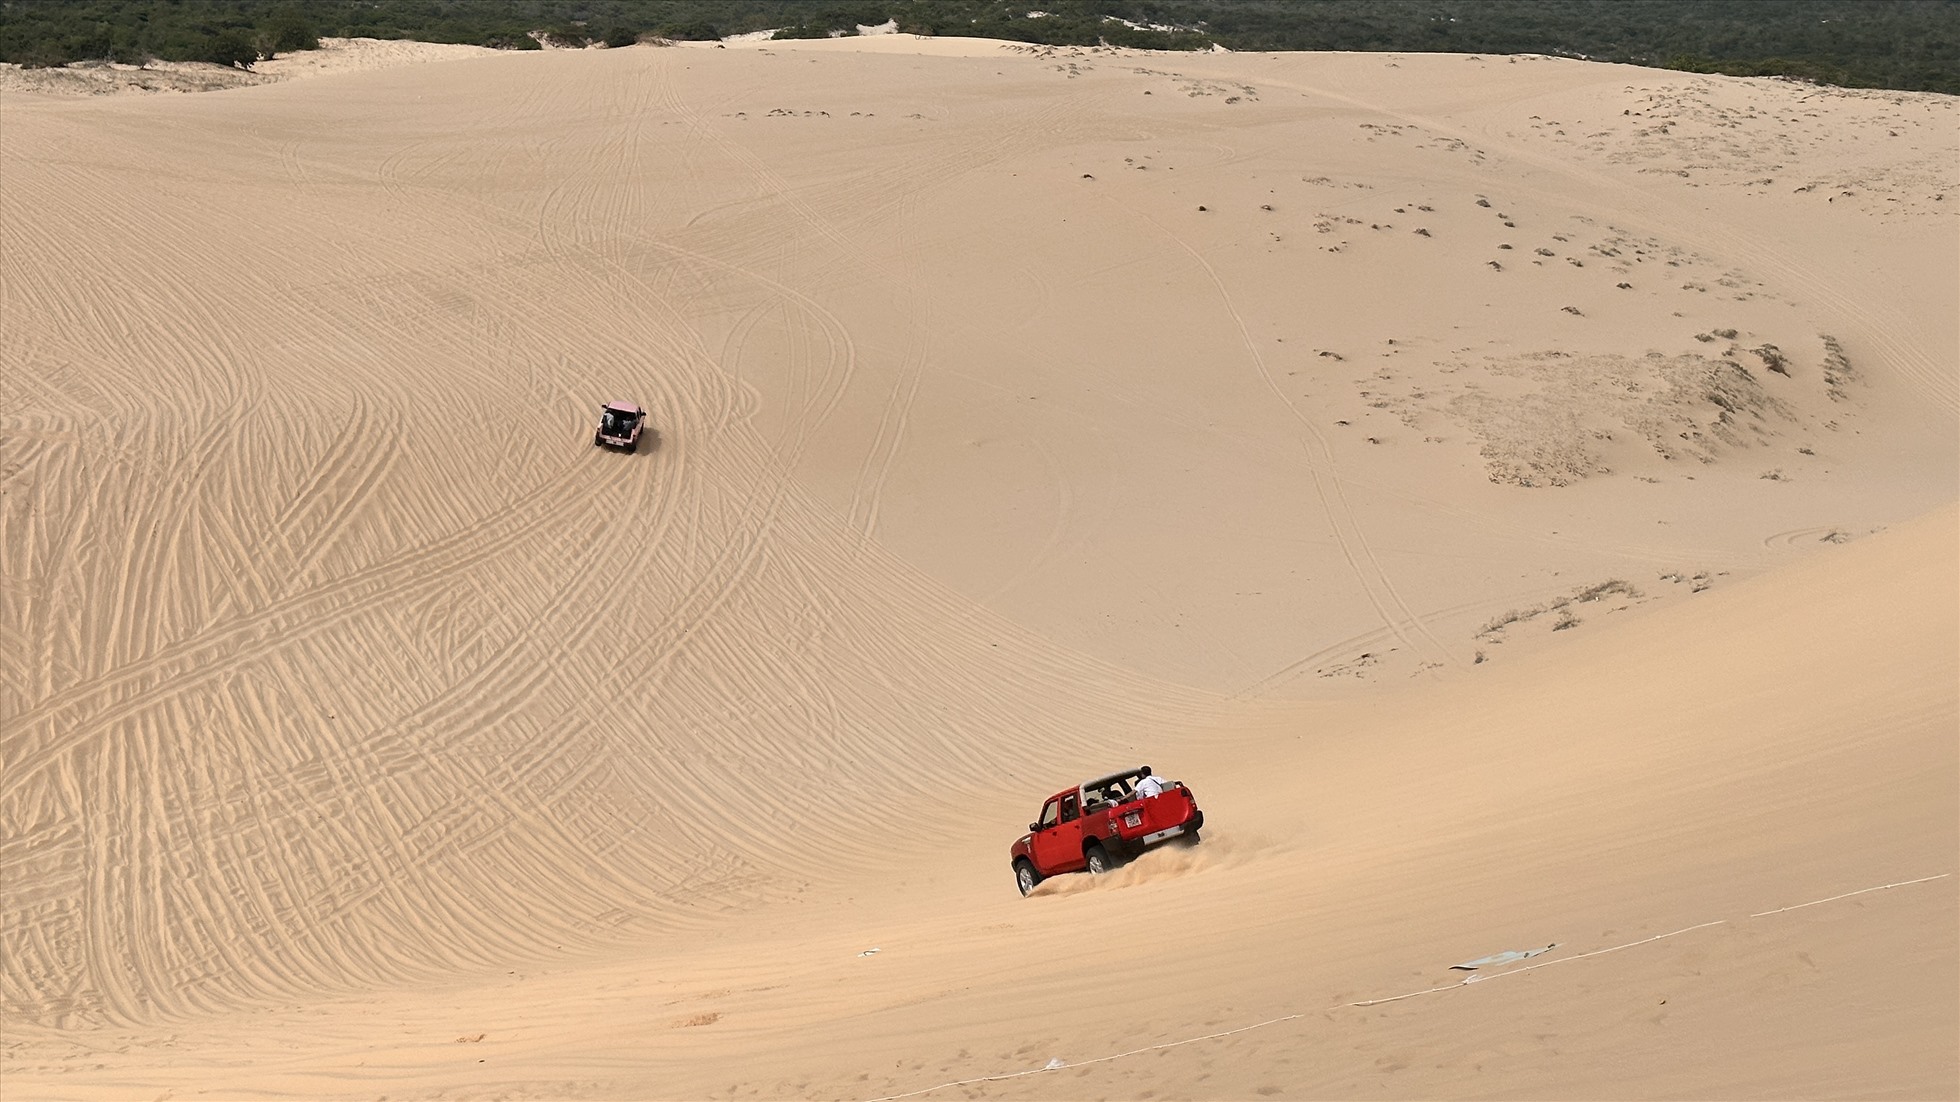 Du khách trải nghiệm xe địa hình ở đồi cát Bàu Trắng. Ảnh: Duy Tuấn